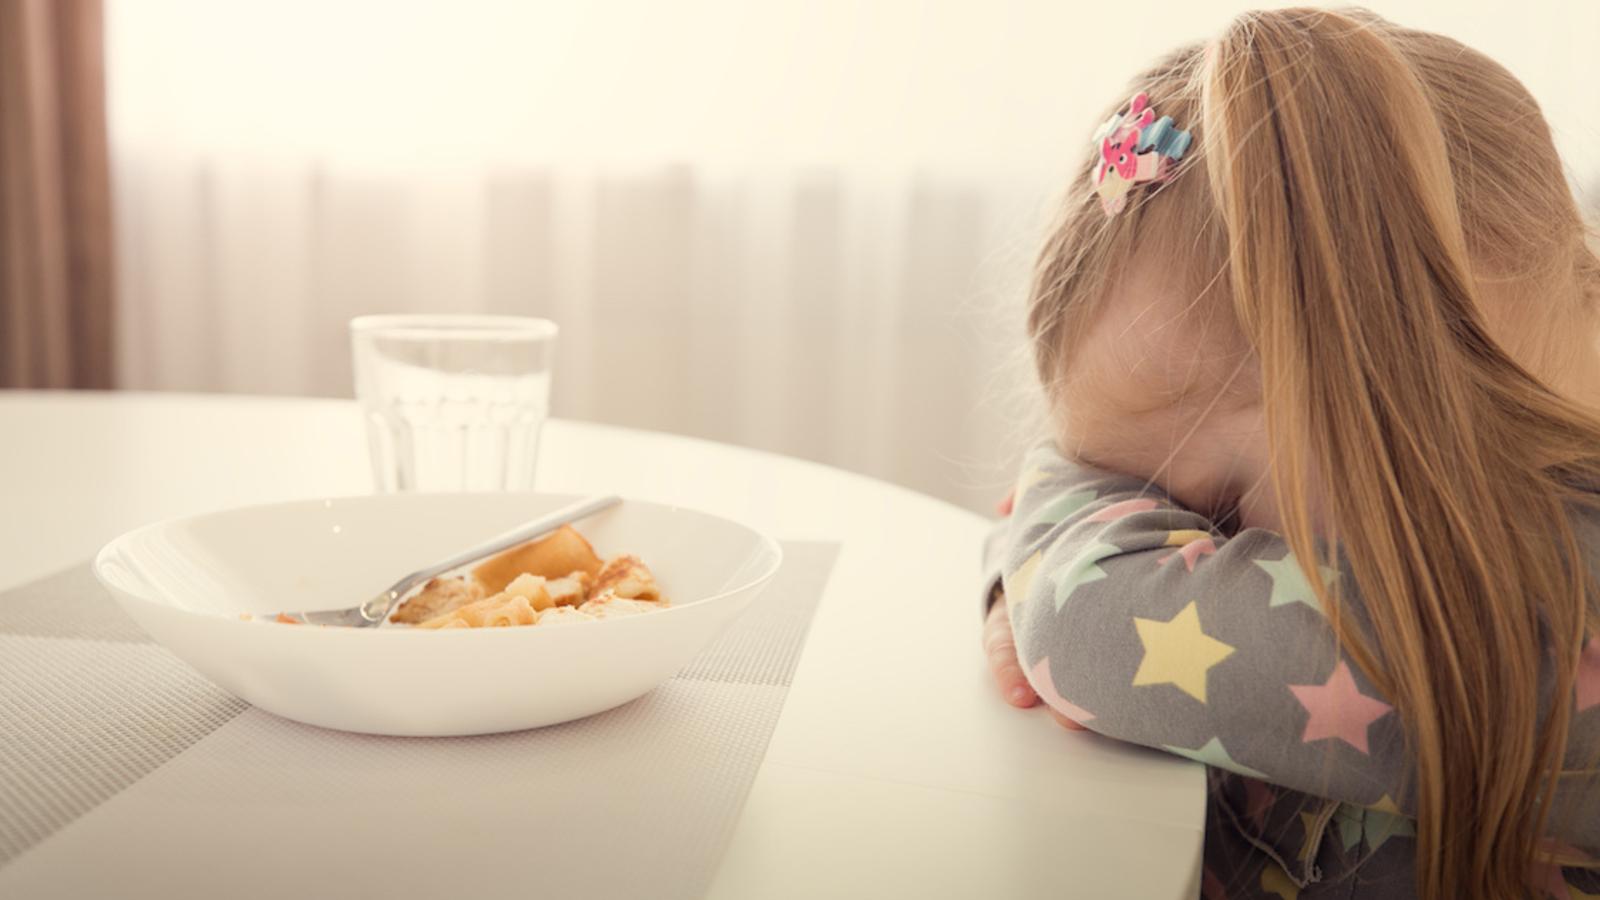 Une spécialiste explique pourquoi il ne faut pas obliger un enfant à terminer son assiette pour avoir un dessert